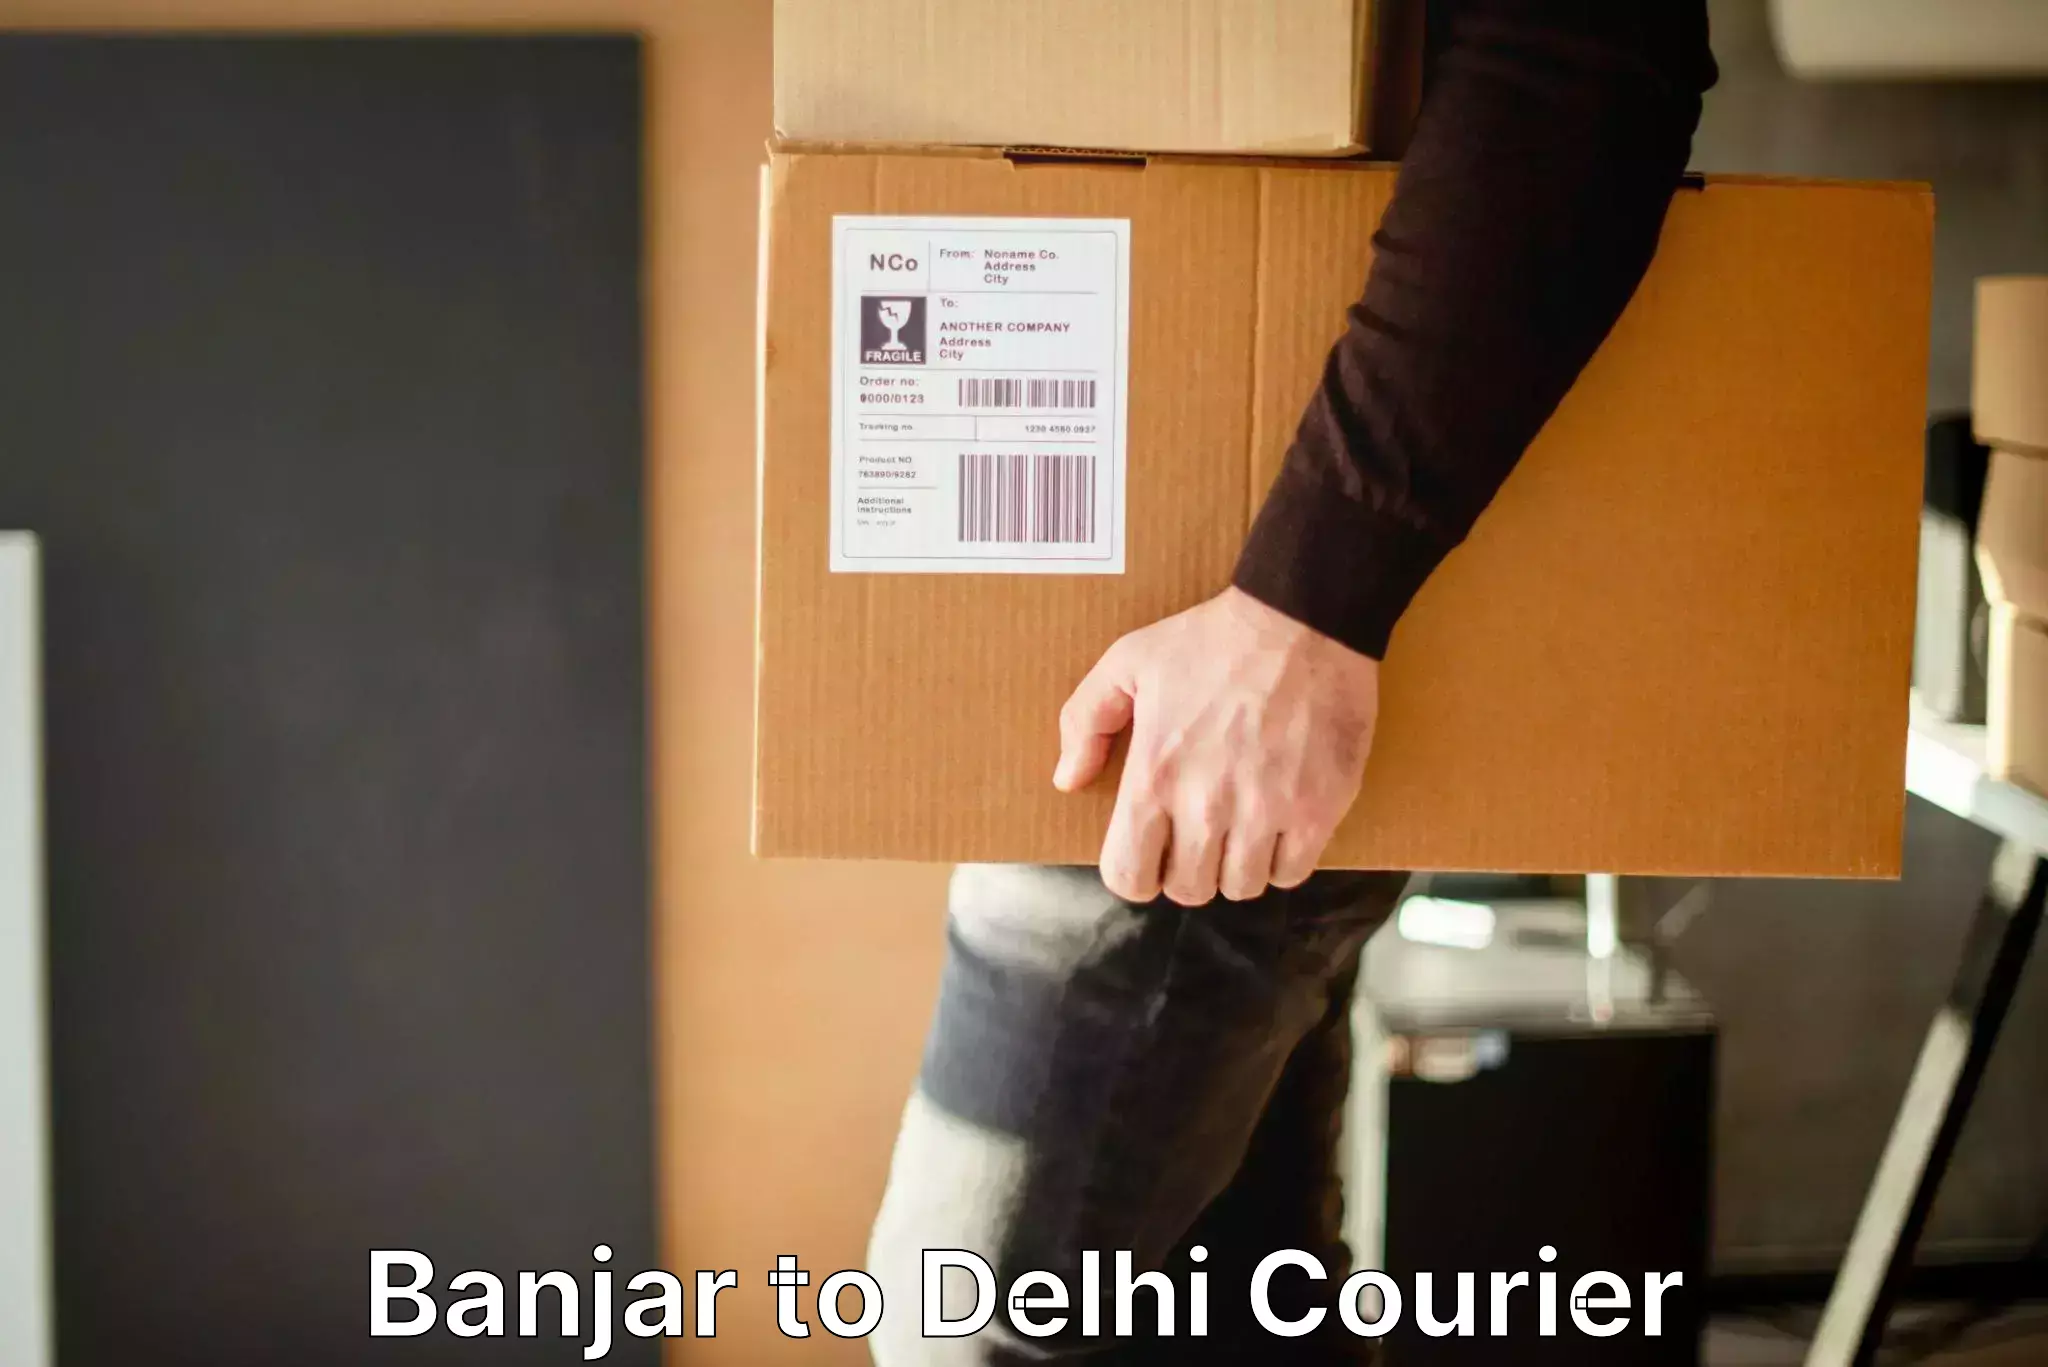 Digital baggage courier Banjar to Delhi